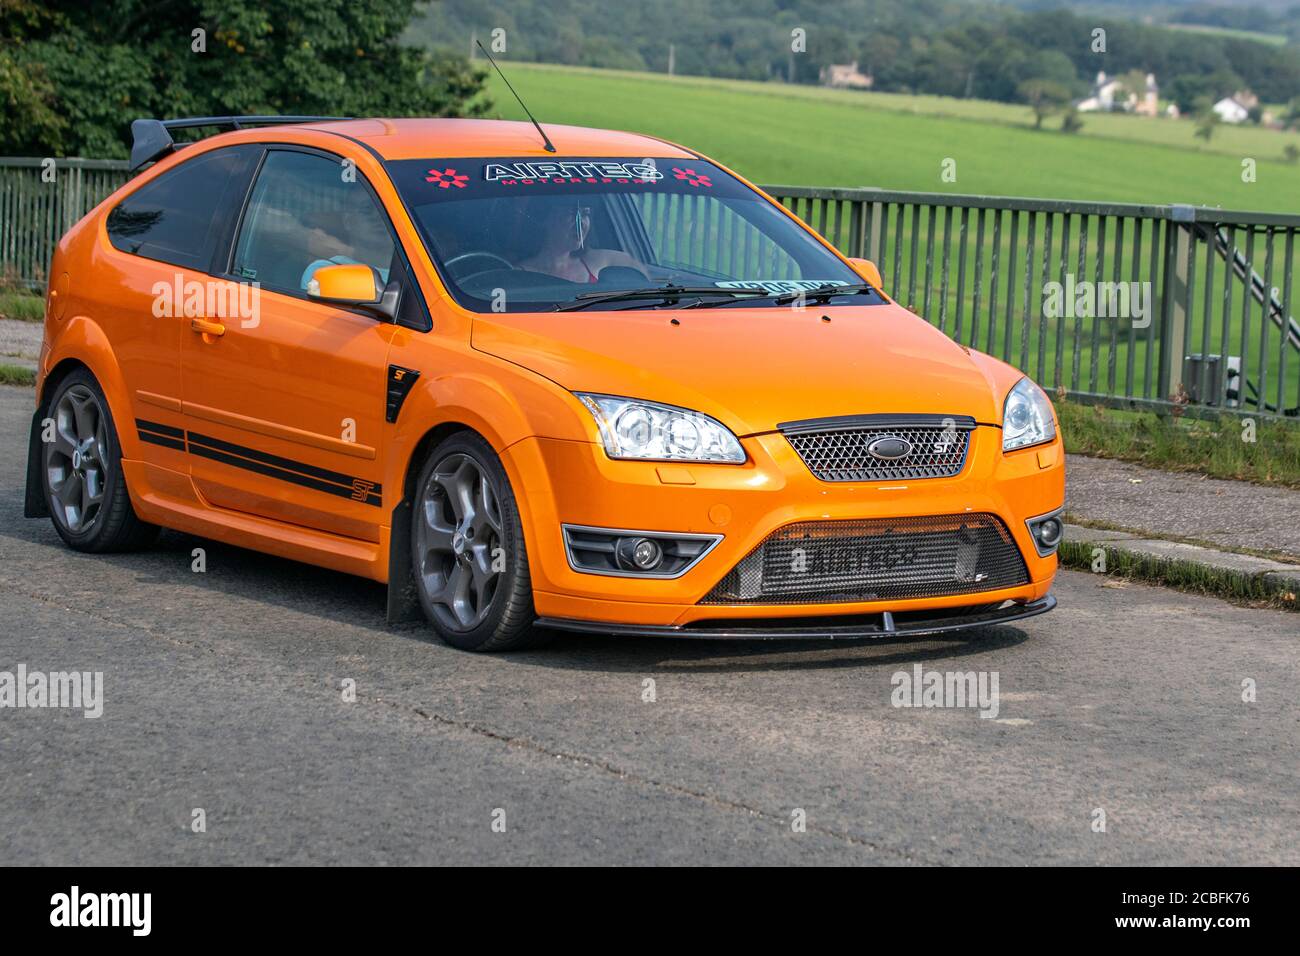 Orange 2016 Focus Ford ST AIRTEC Motorsport Hot Hatch tráfico Vehicular vehículos móviles, vehículos de conducción en carreteras del Reino Unido, motores, motorización en la red de autopistas M6. Foto de stock